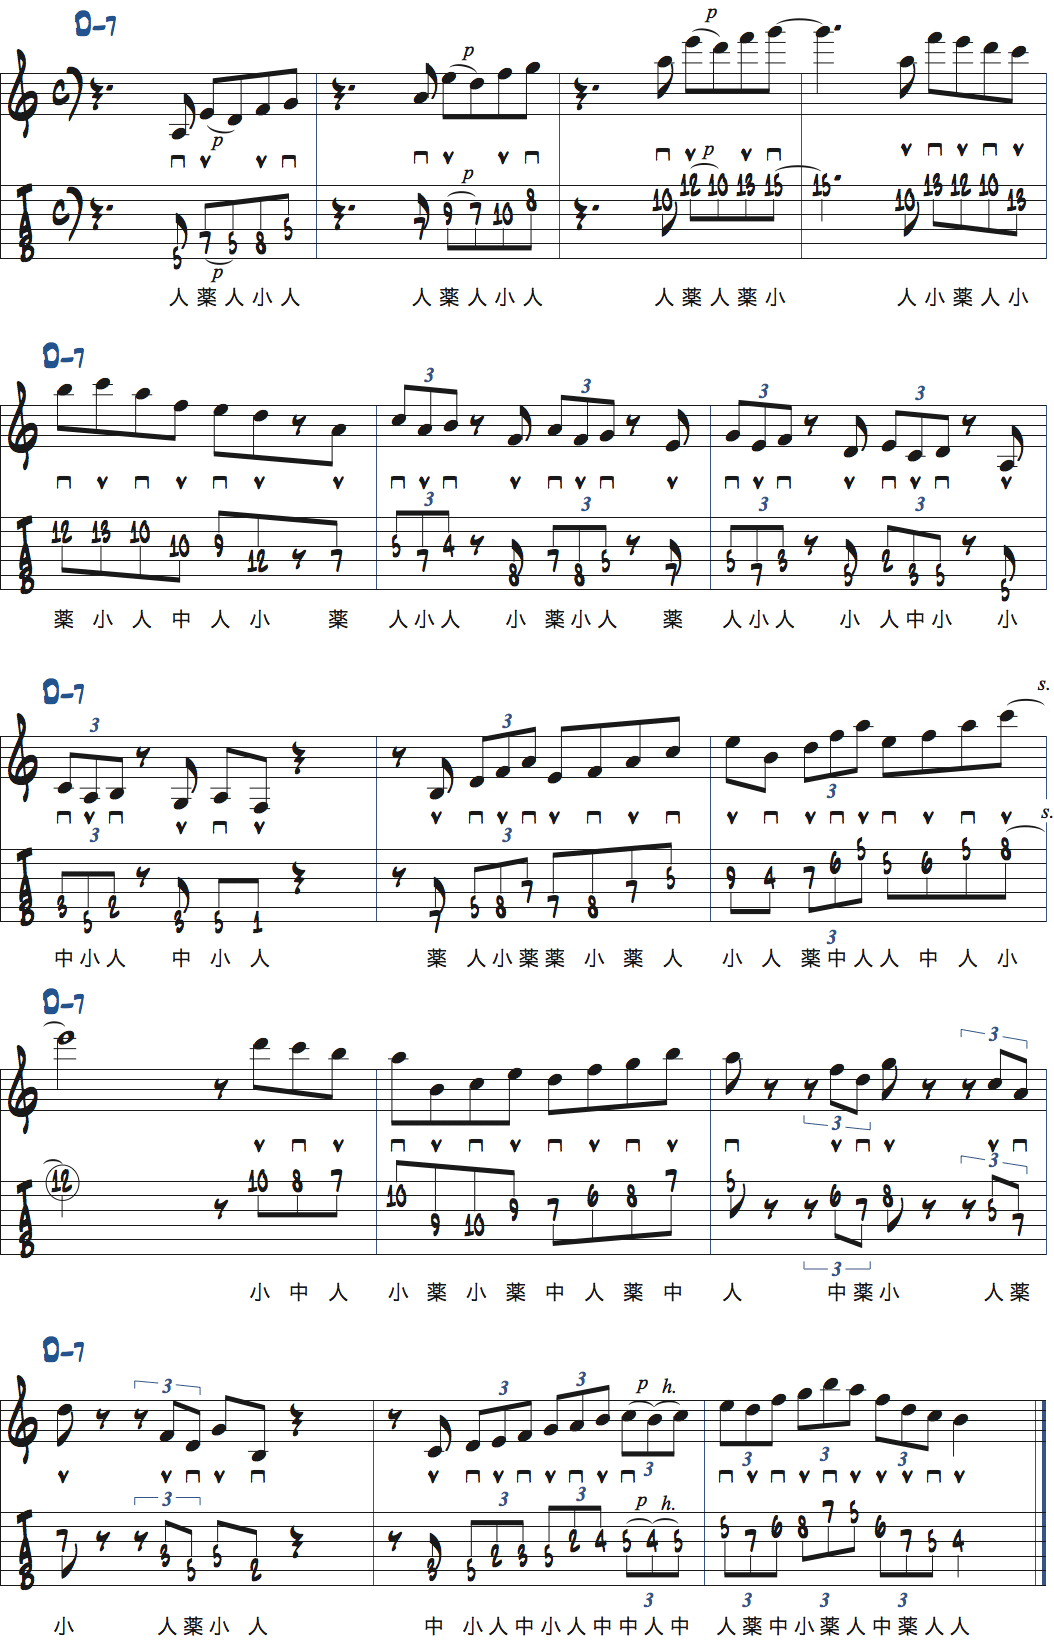 リックを使ったDm7コード上でのアドリブ例楽譜